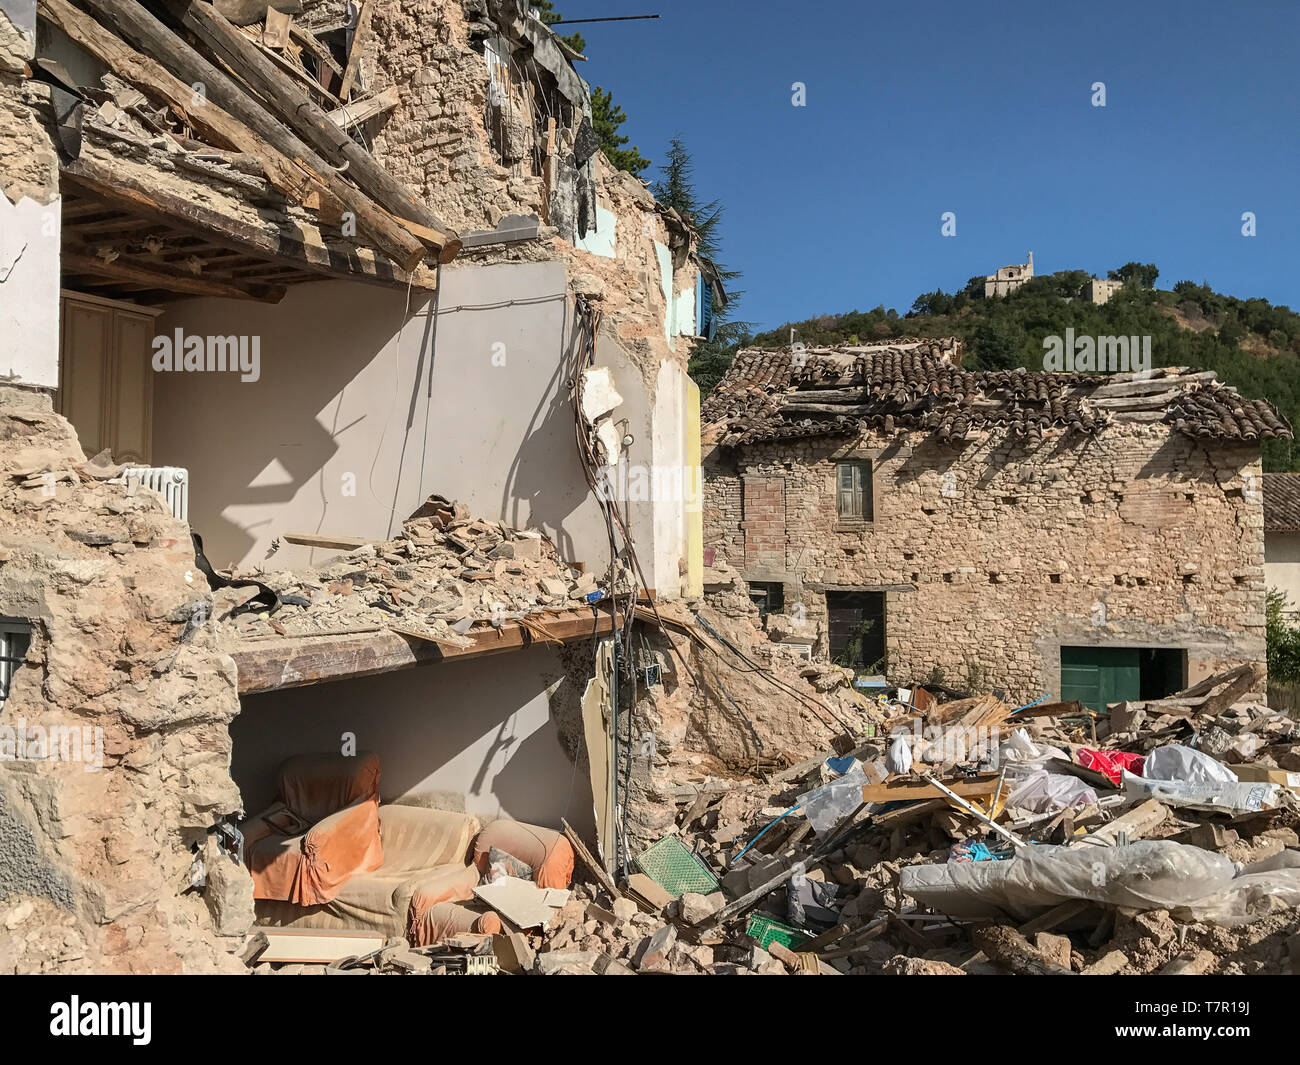 Un gravemente danneggiata casa rurale in Italia dopo un terremoto, la parete esterna è stata distrutta esponendo l'interno della casa, contro un cielo blu Foto Stock